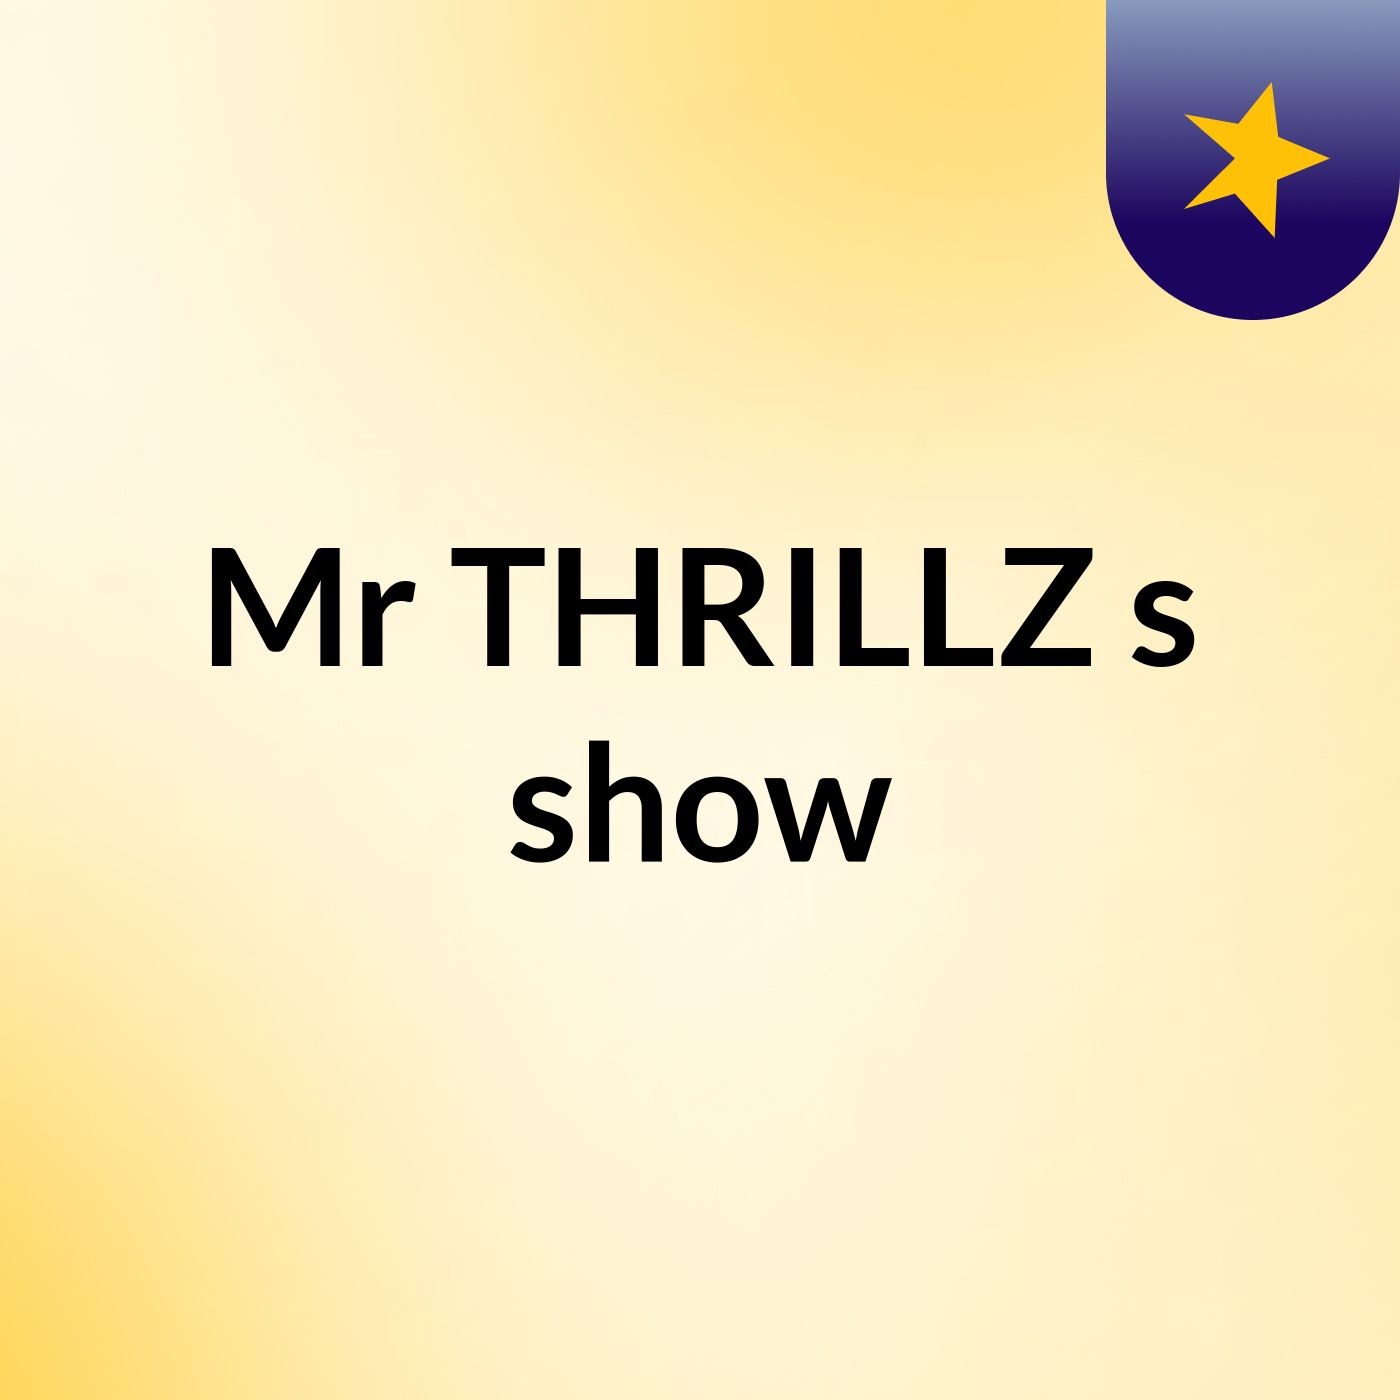 Mr THRILLZ's show